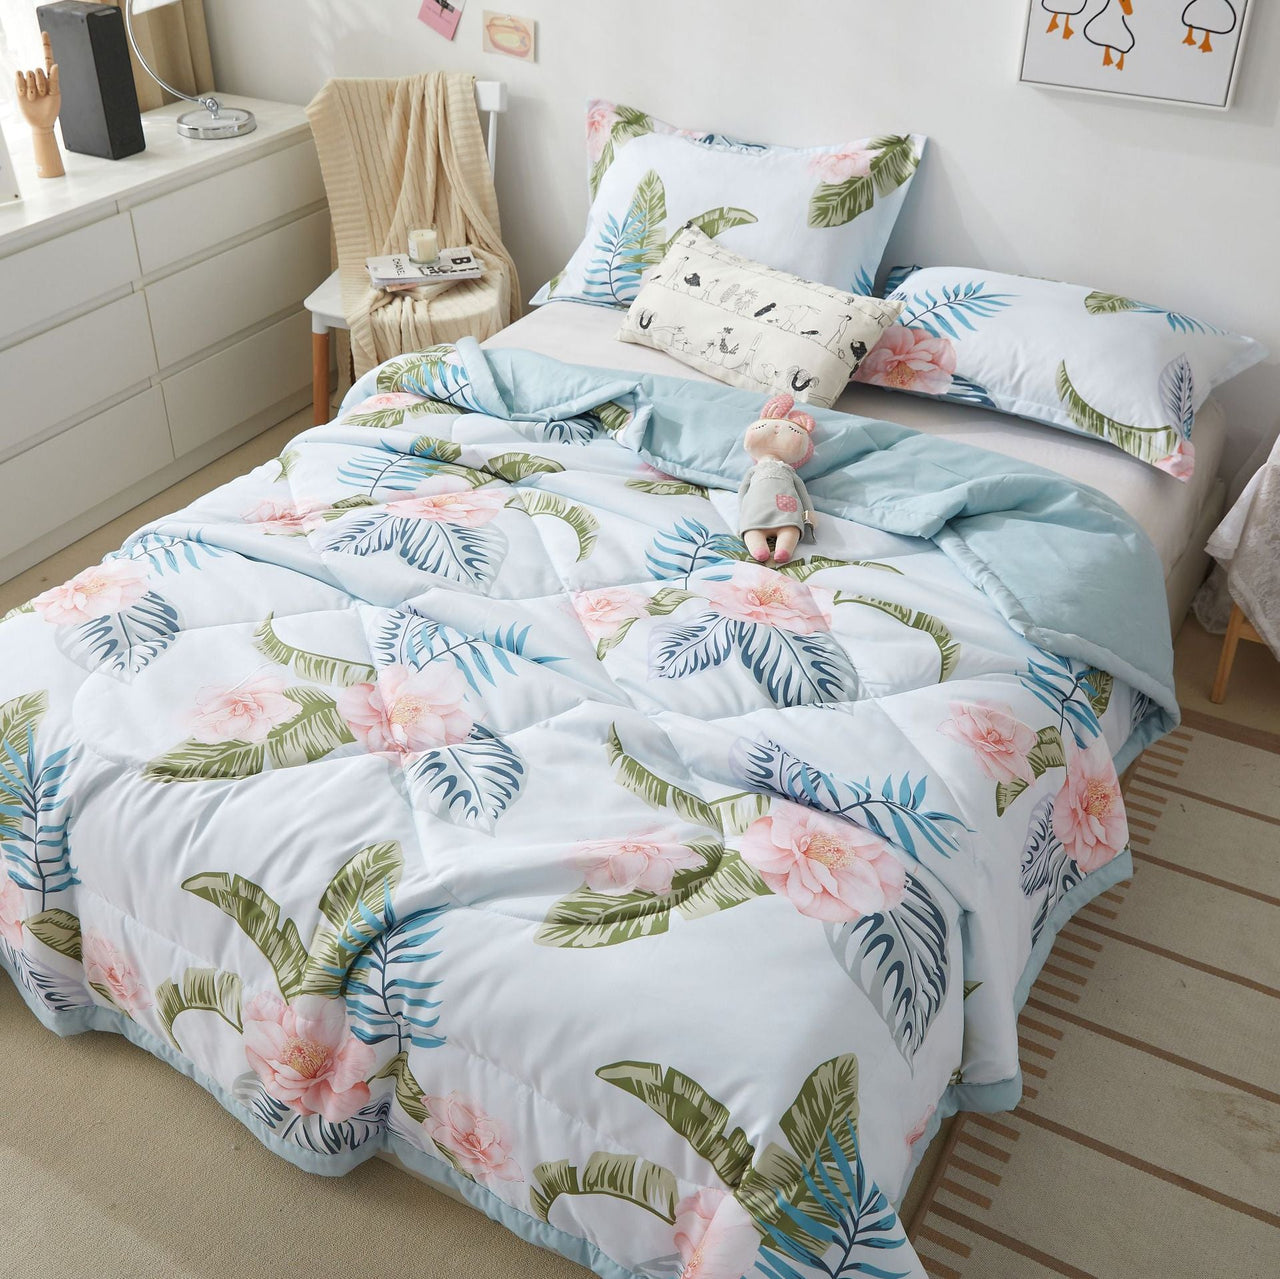 Grey Bear Summer Quilt: Comforter - Casatrail.com